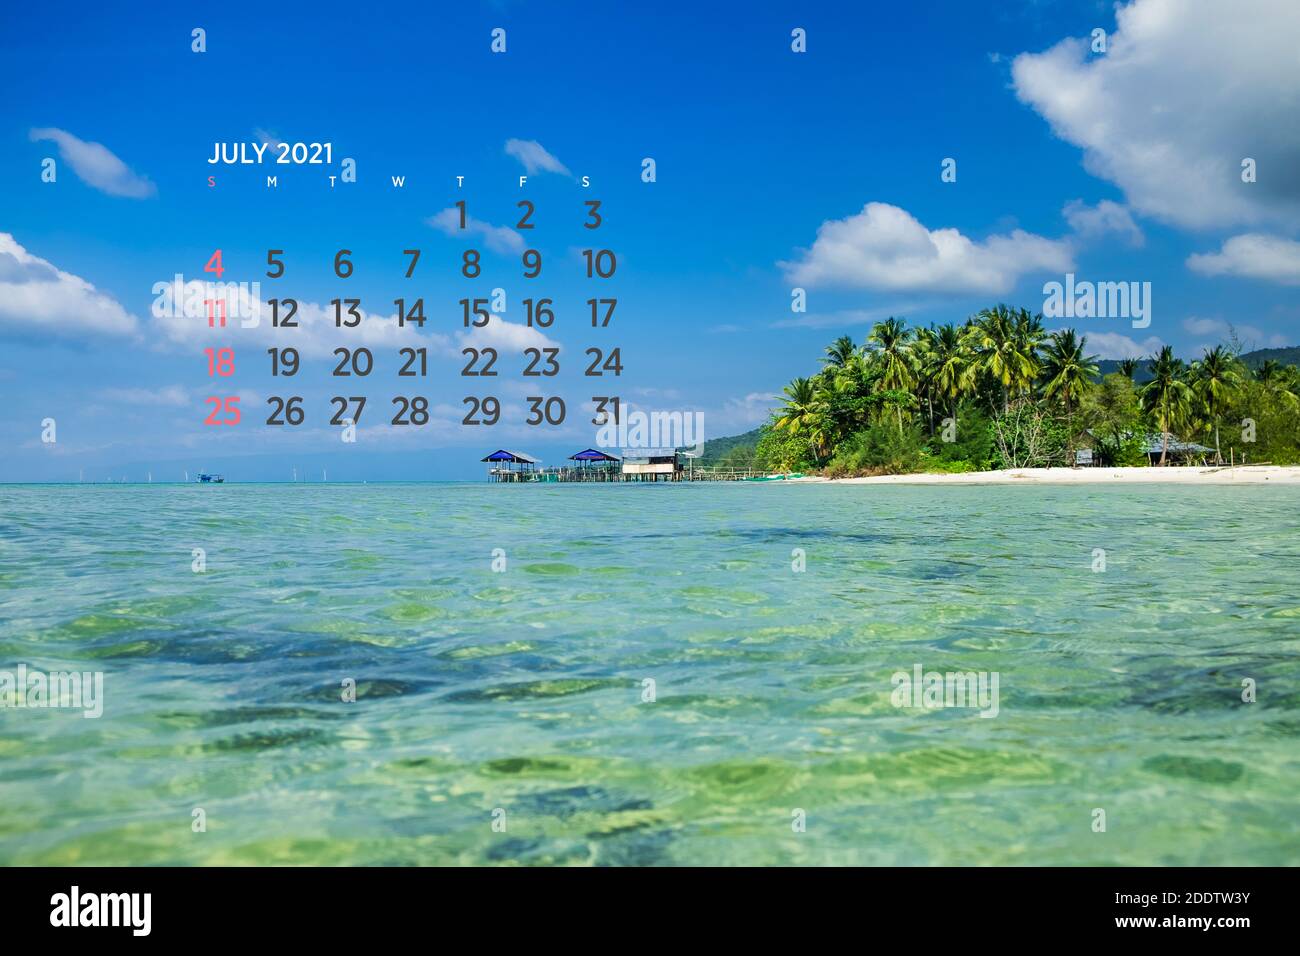 Calendar July 2021. Sea, ocean, beach, tropical, nature theme. A2. 60 x 40 cm. 15.75 x 23.62 inches Stock Photo